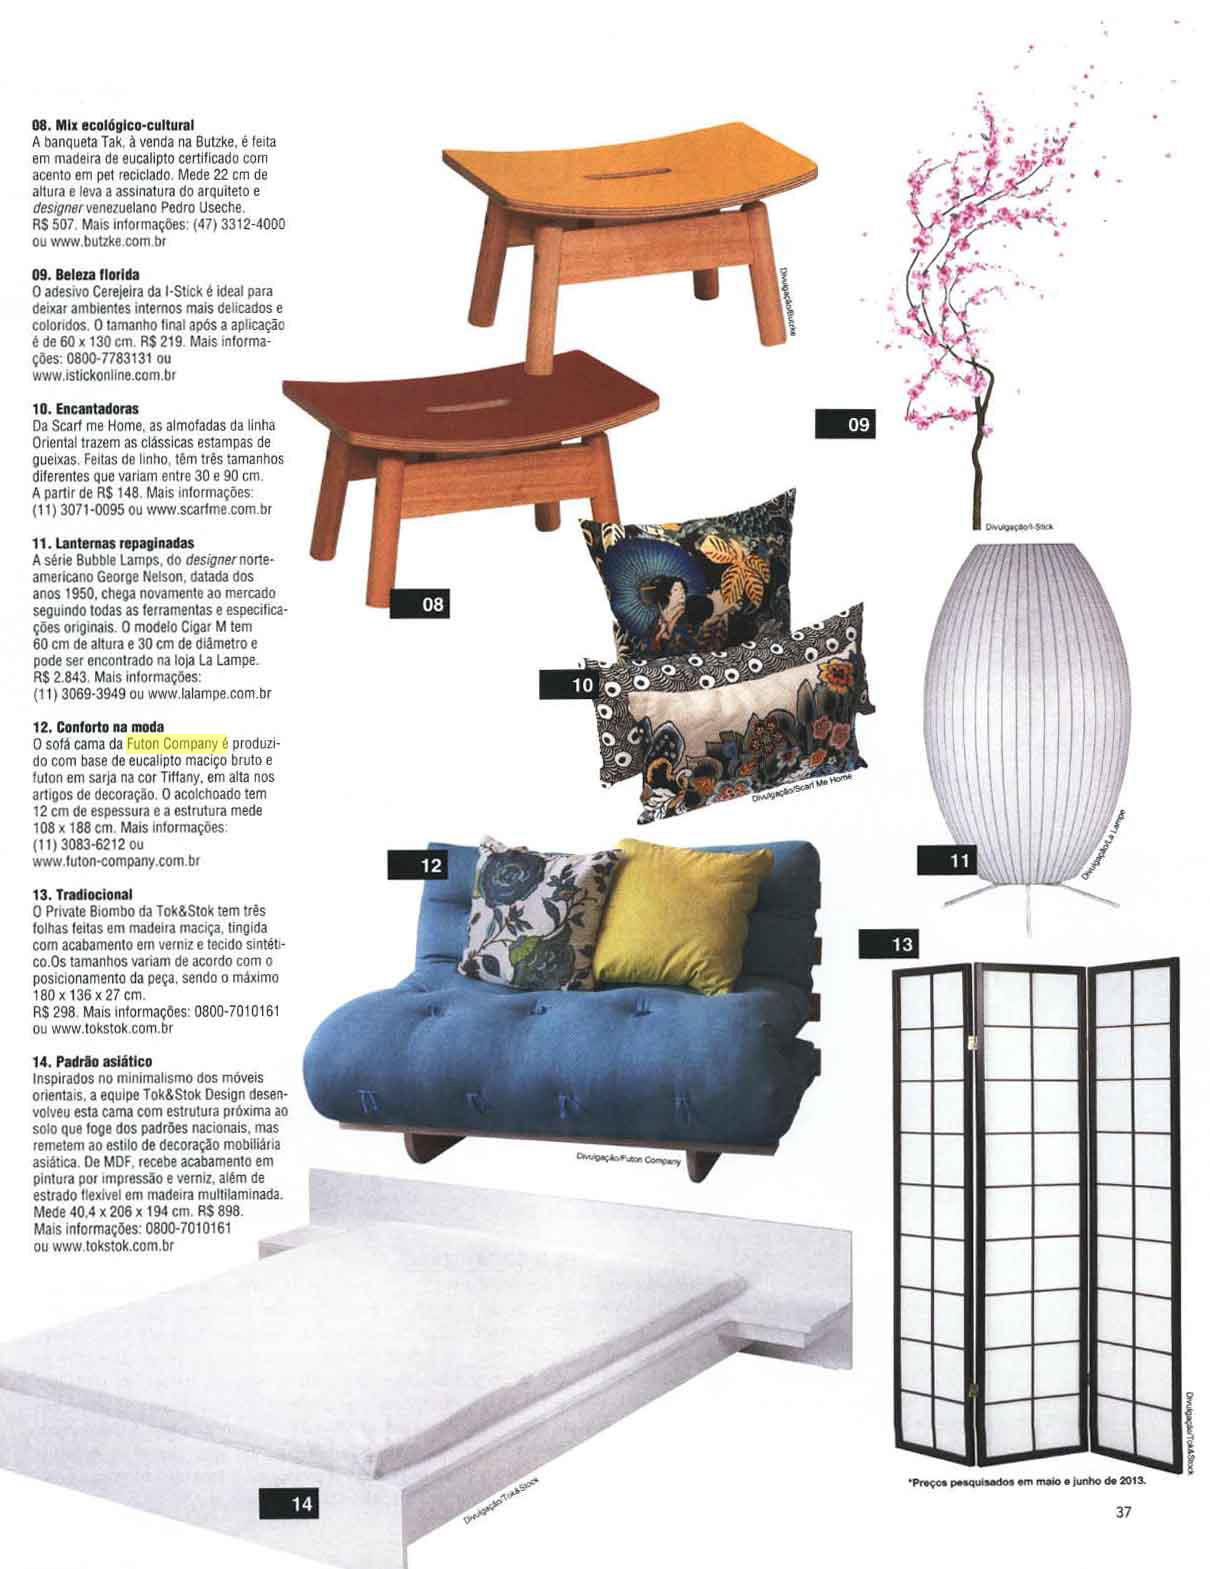 Sofá-cama Joy sarja na revista Construir de Fevereiro de 2015